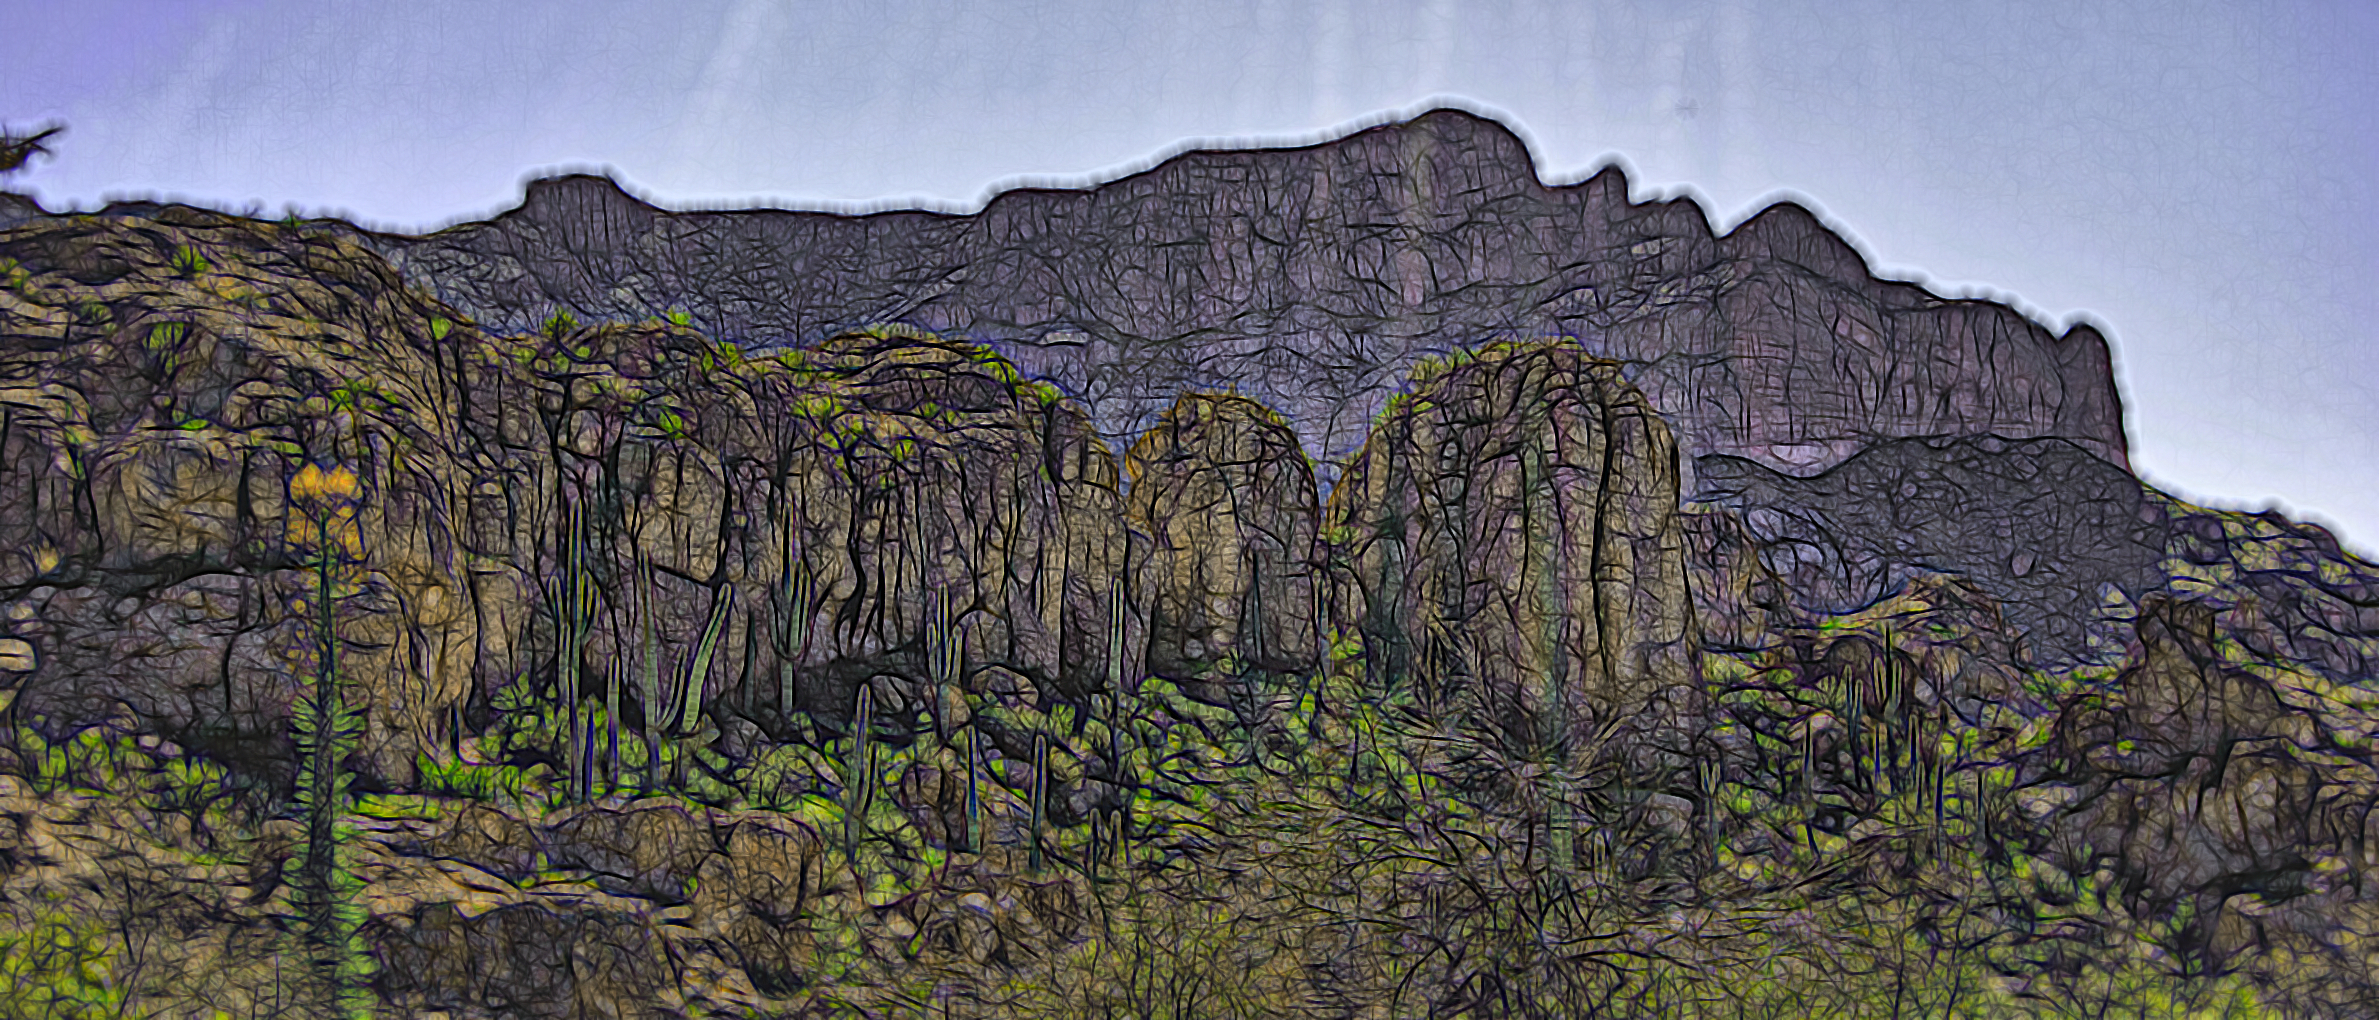 Cliffs in Arizona